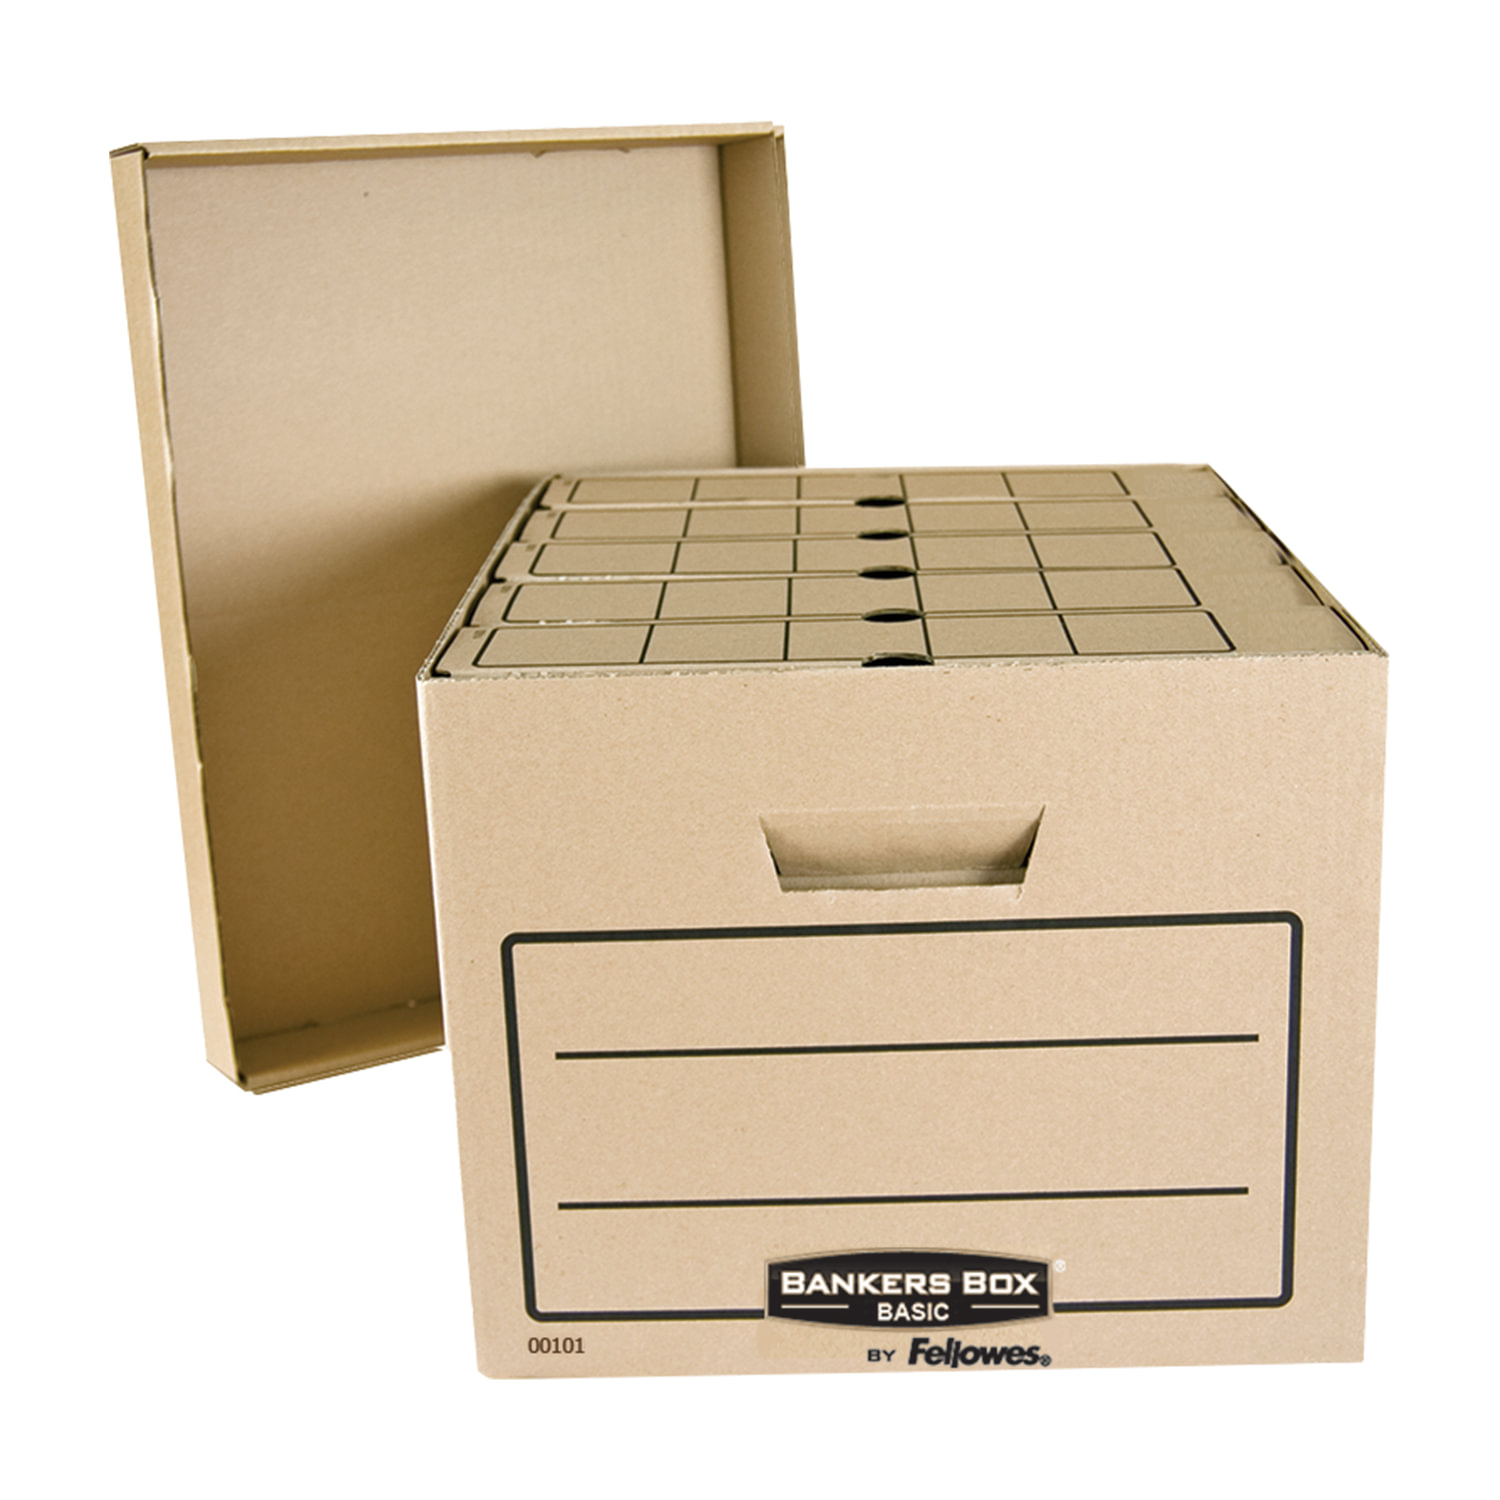 Архивный короб — недорогая и экологичная упаковка из картона